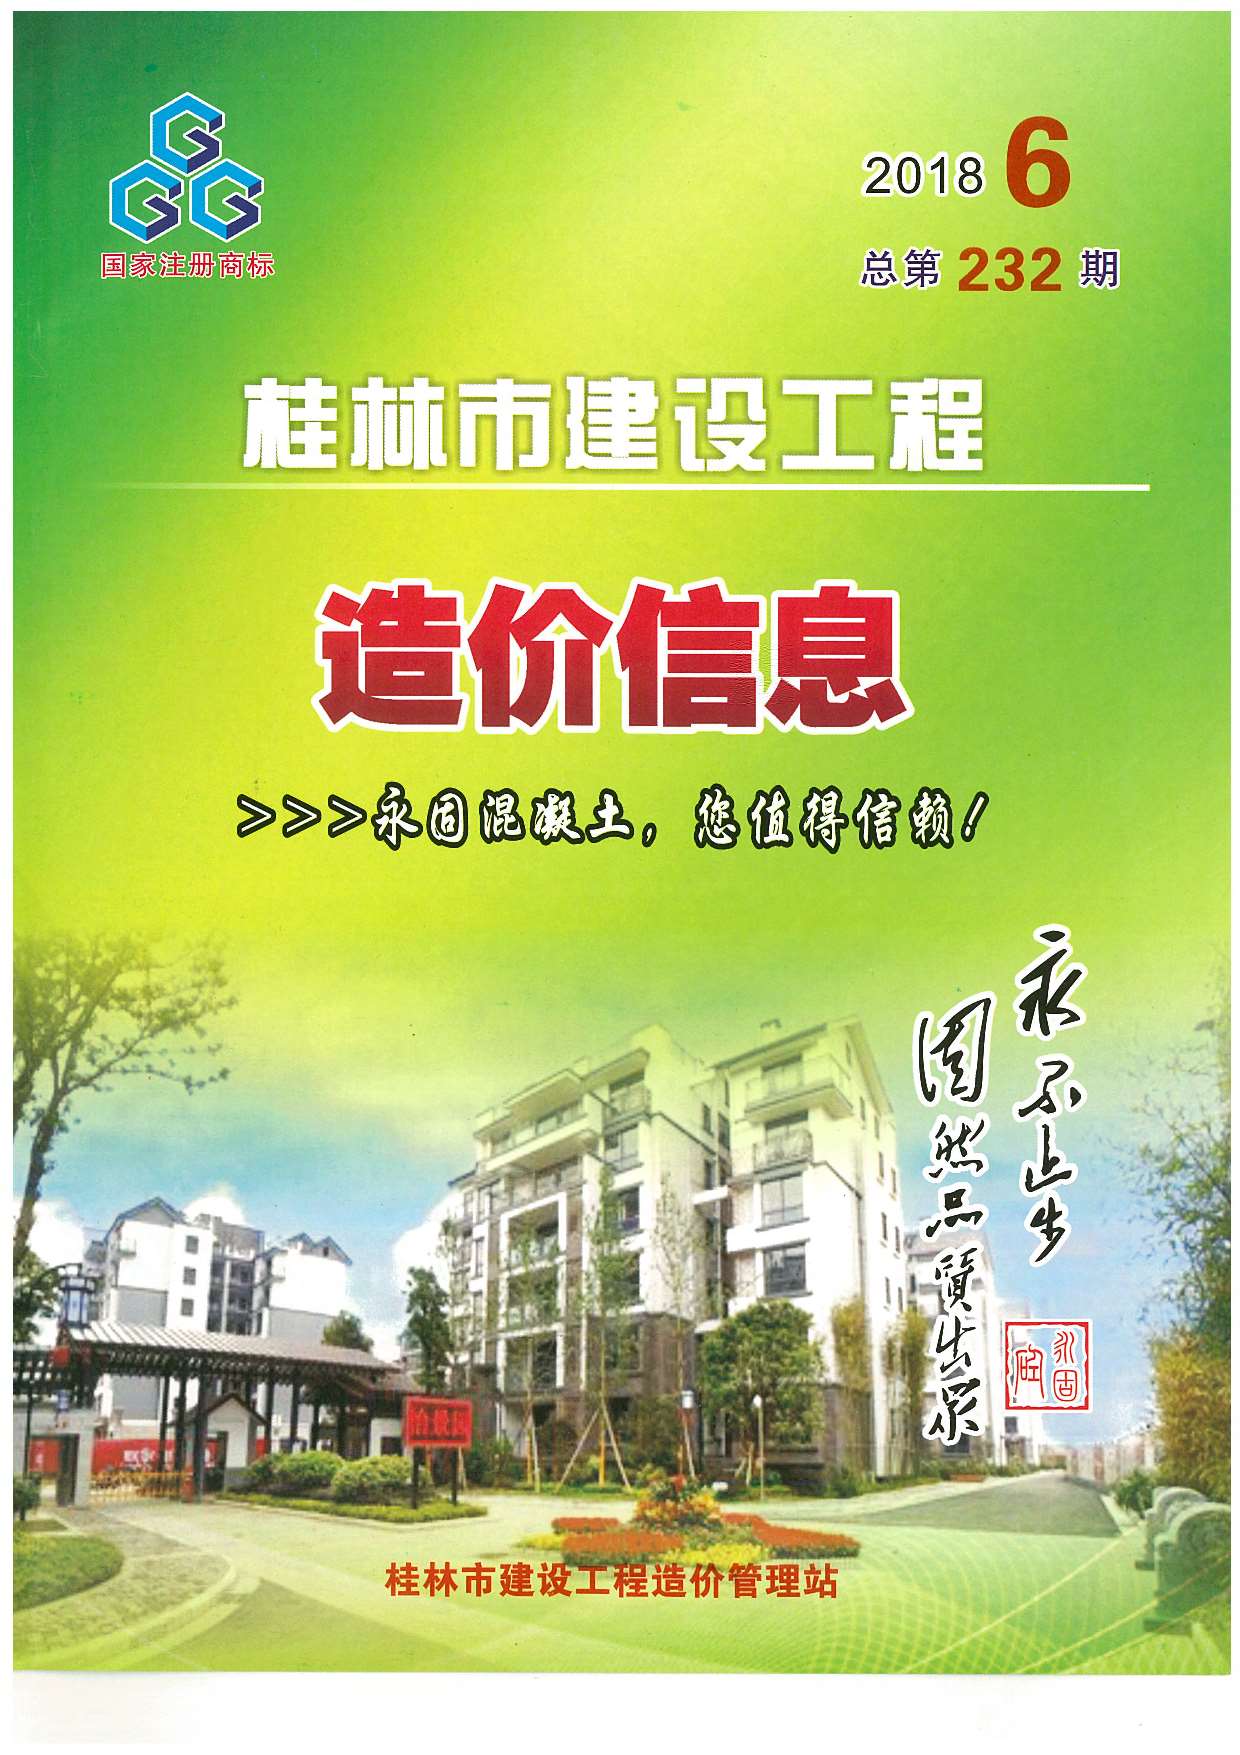 桂林市2018年6月建设工程造价信息